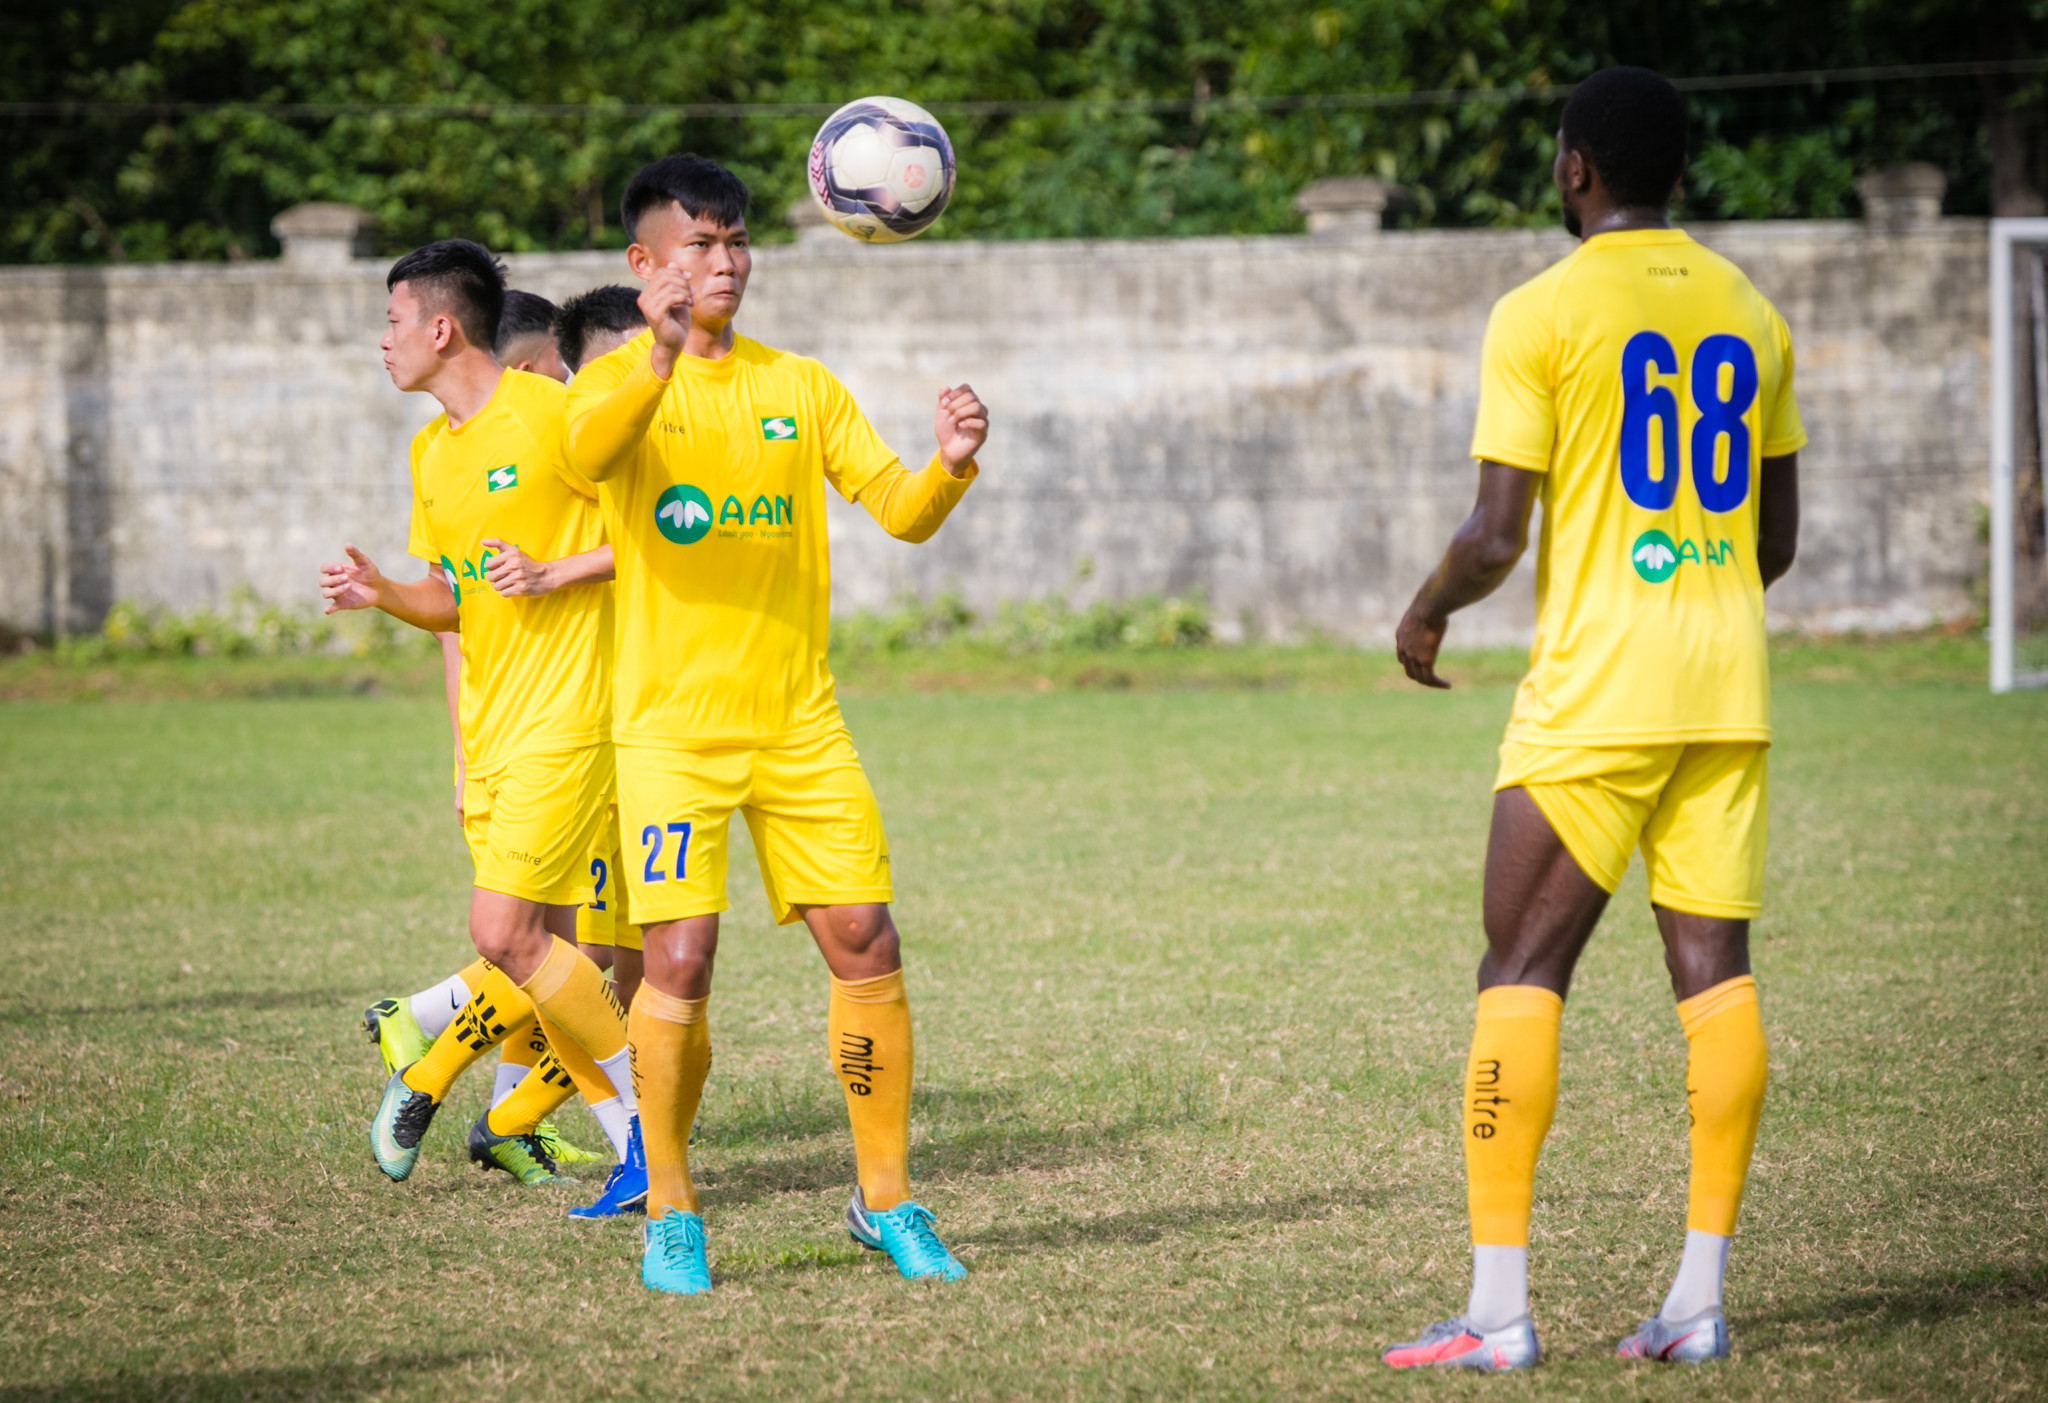 Nguyễn Xuân Bình là cầu thủ sinh năm 2001, anh được đôn lên đội 1 SLNA từ tháng 12 năm 2020. Chơi ở vị trí tiền vệ phòng ngự Xuân Binh luôn cho thấy được sự mạnh mẽ trong việc thu hồi bóng cũng như phát động tấn công rất tốt. Ảnh: Đức Anh